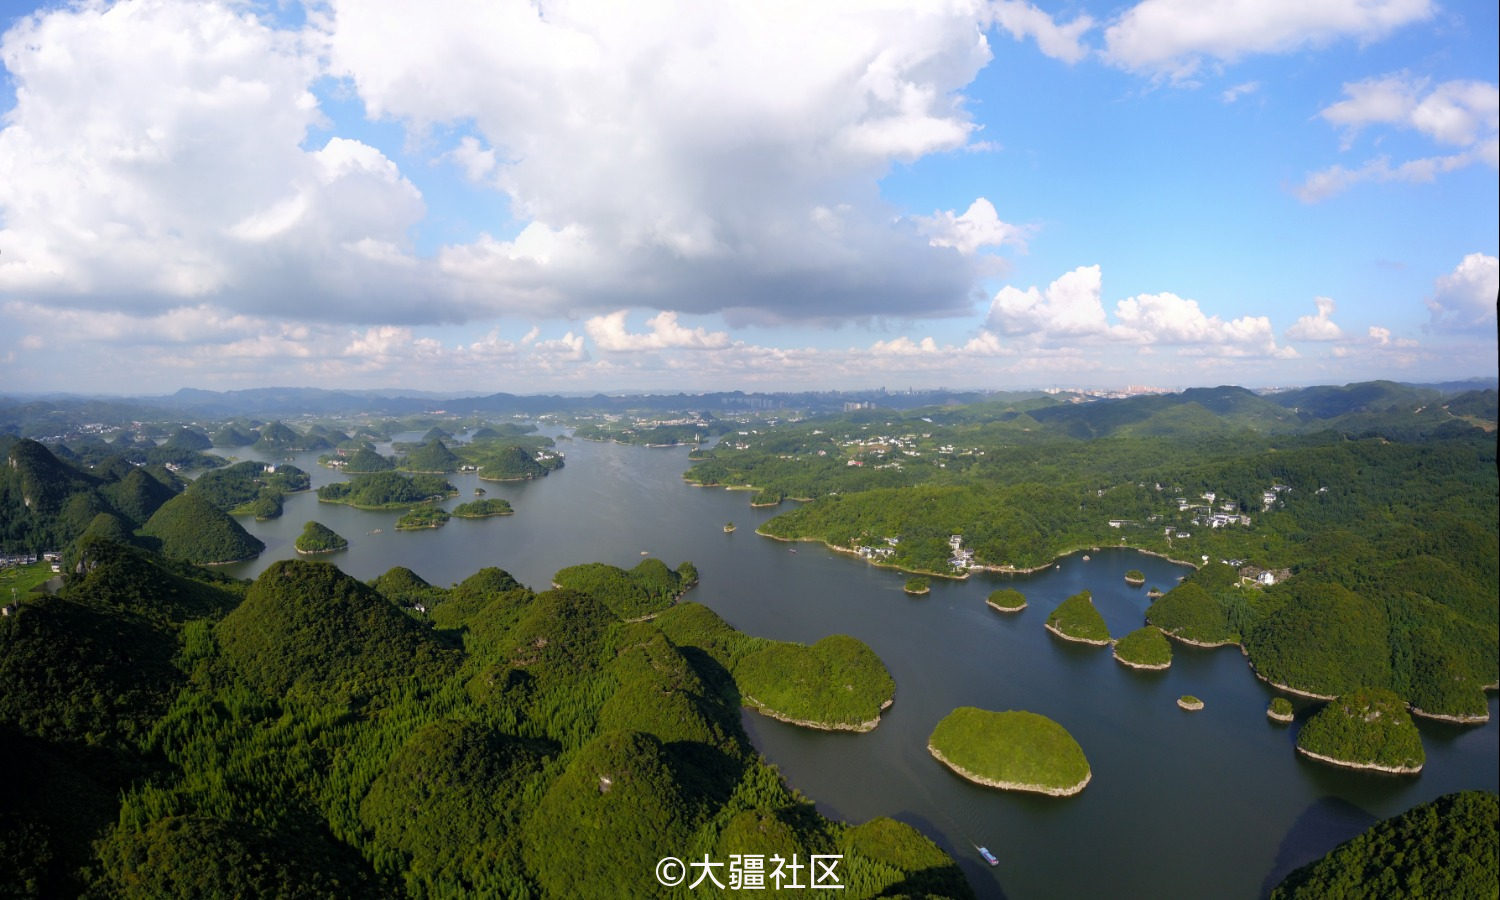 也打算在央视航拍中国贵州篇上映之前,做一个比较全的贵州航拍合 